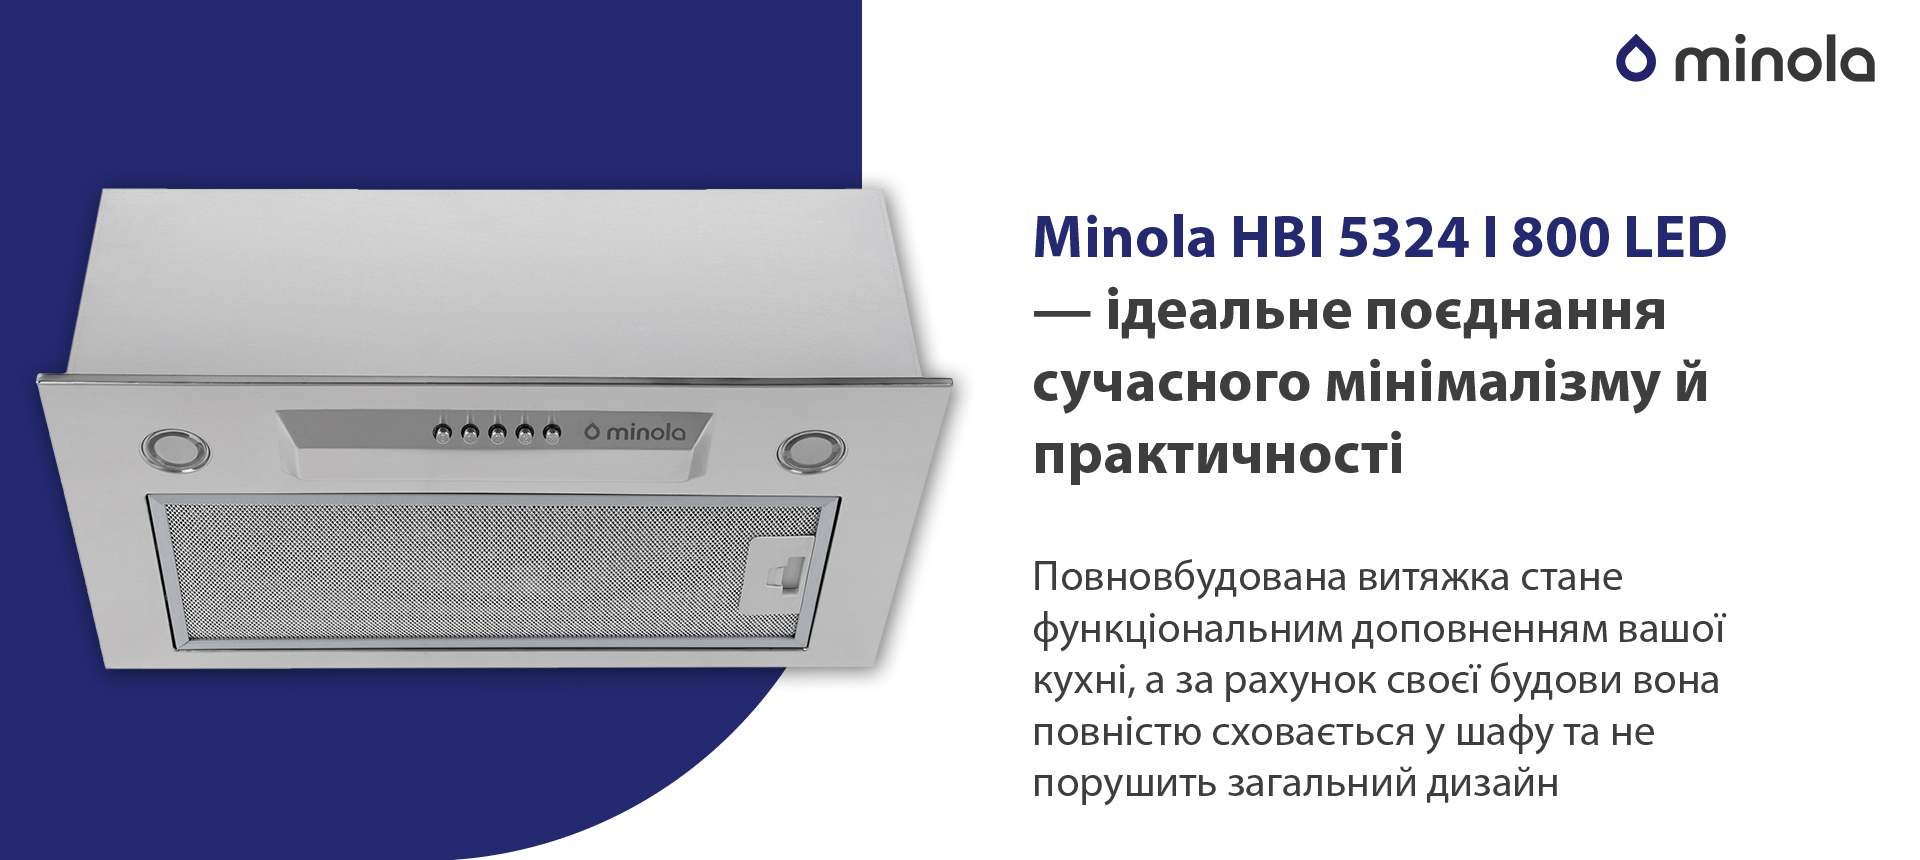 Minola HBI 5324 I 800 LED в магазине в Киеве - фото 10